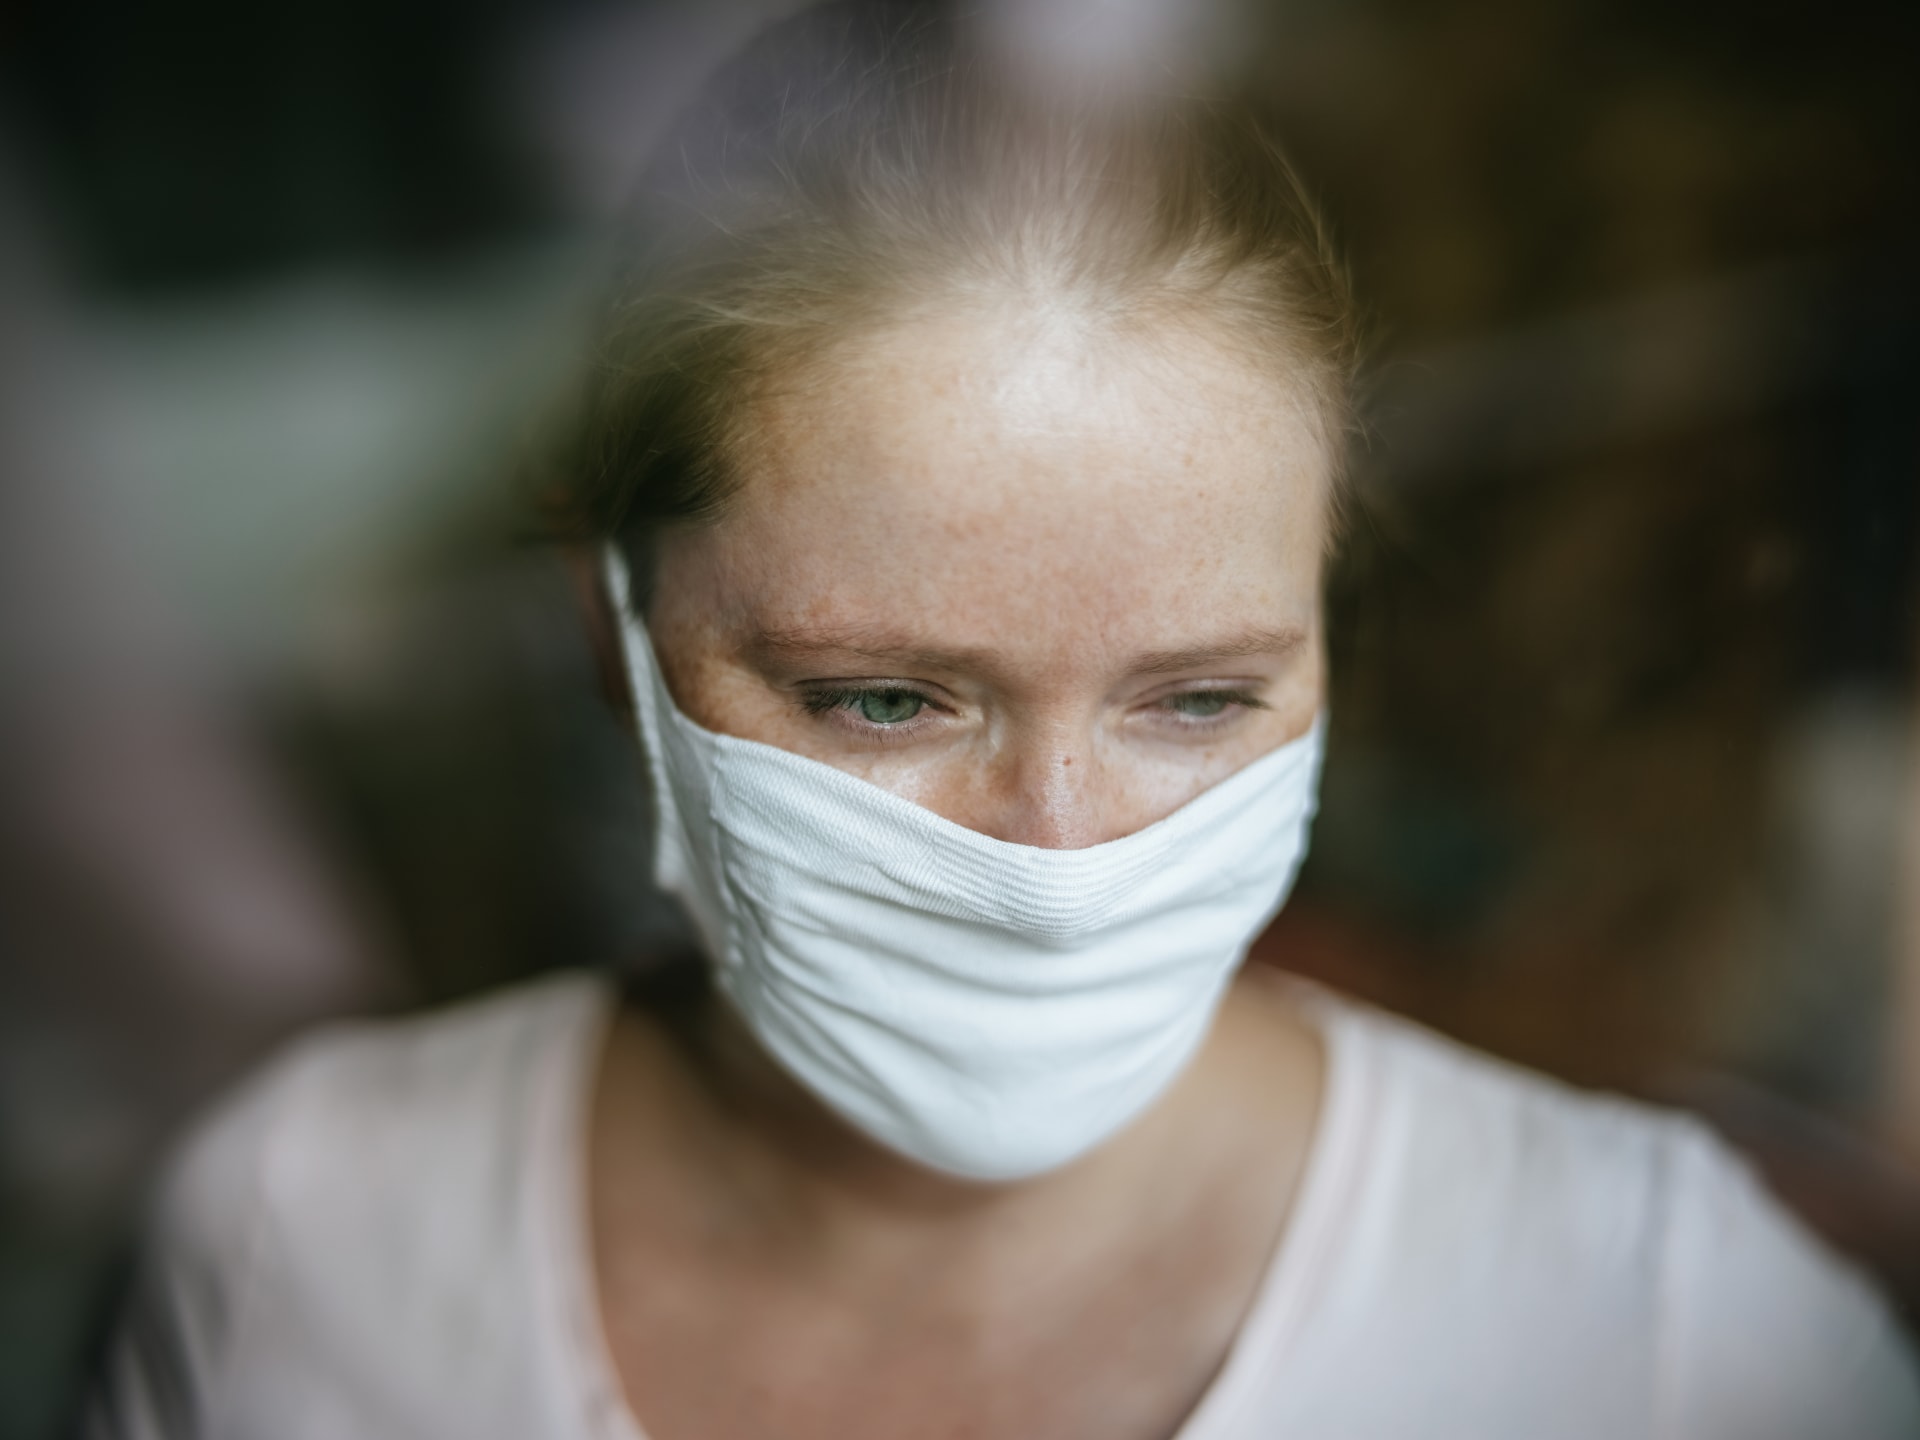 Žena za oknem s respirátorem (ilustrační foto)